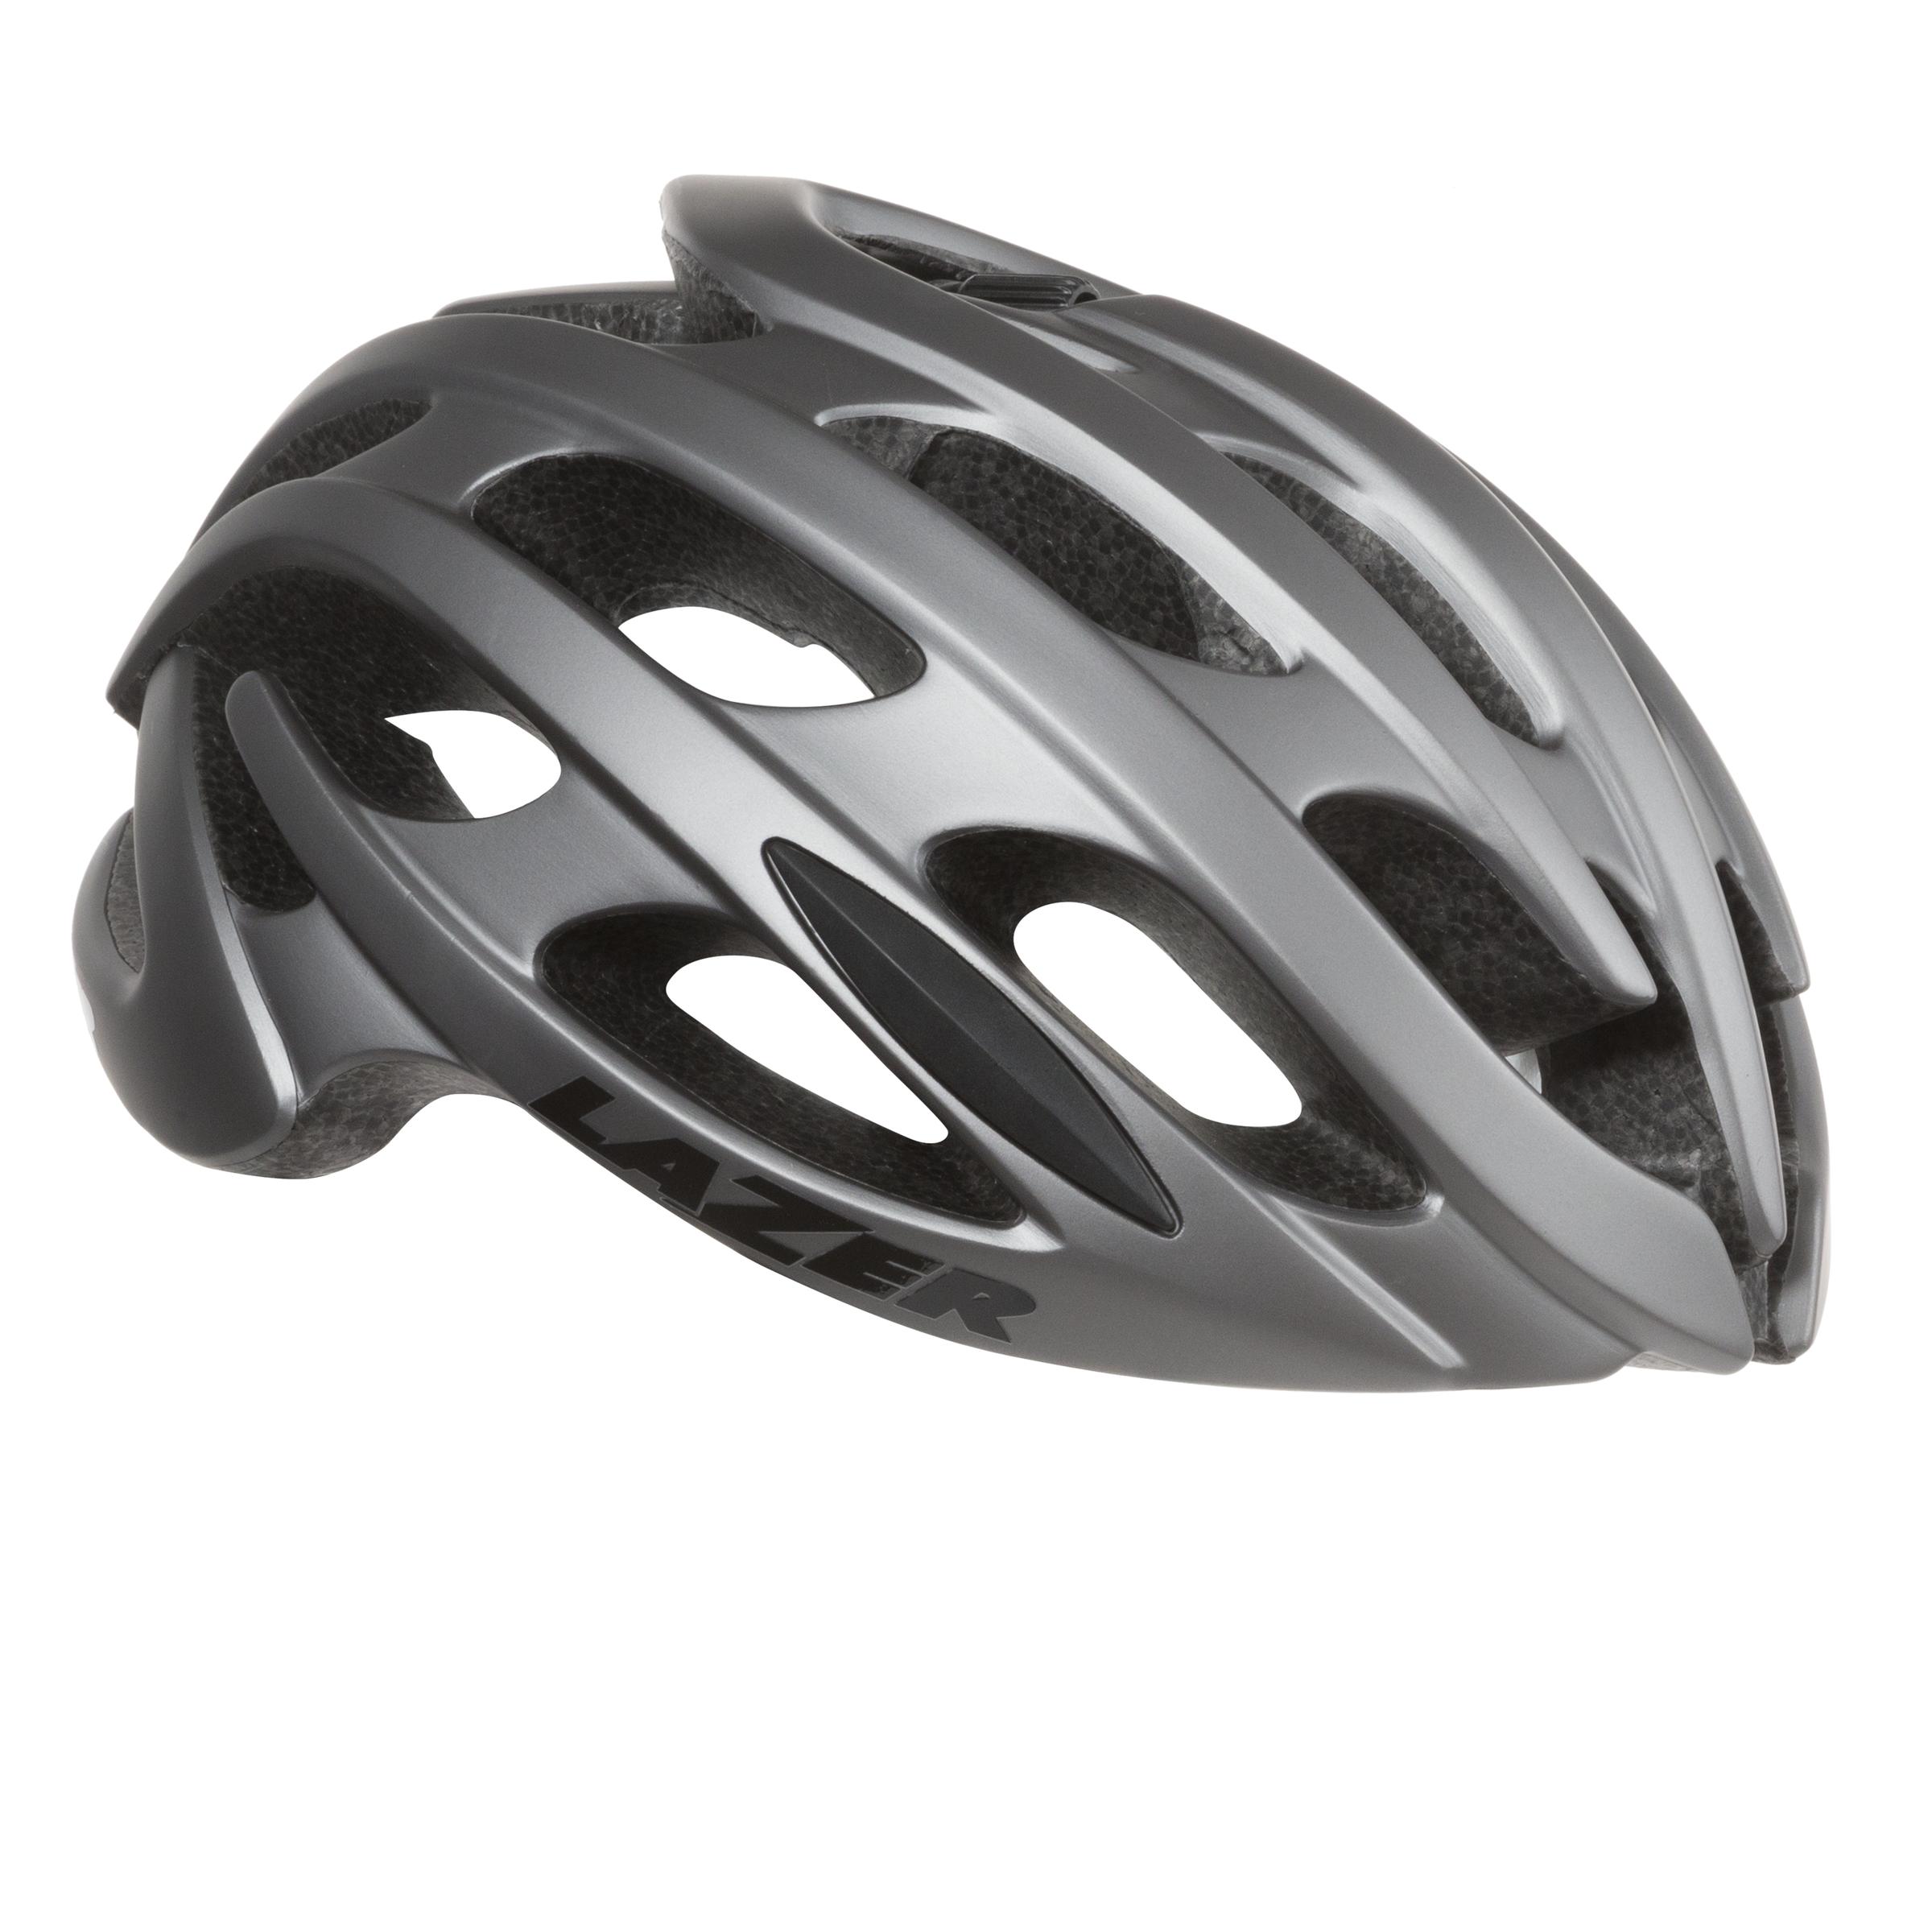 Beginner Bemiddelen mouw Lazer Sport Blade MIPS Helmet - Maplewood Bicycle St Louis MO 63143  314-781-9566